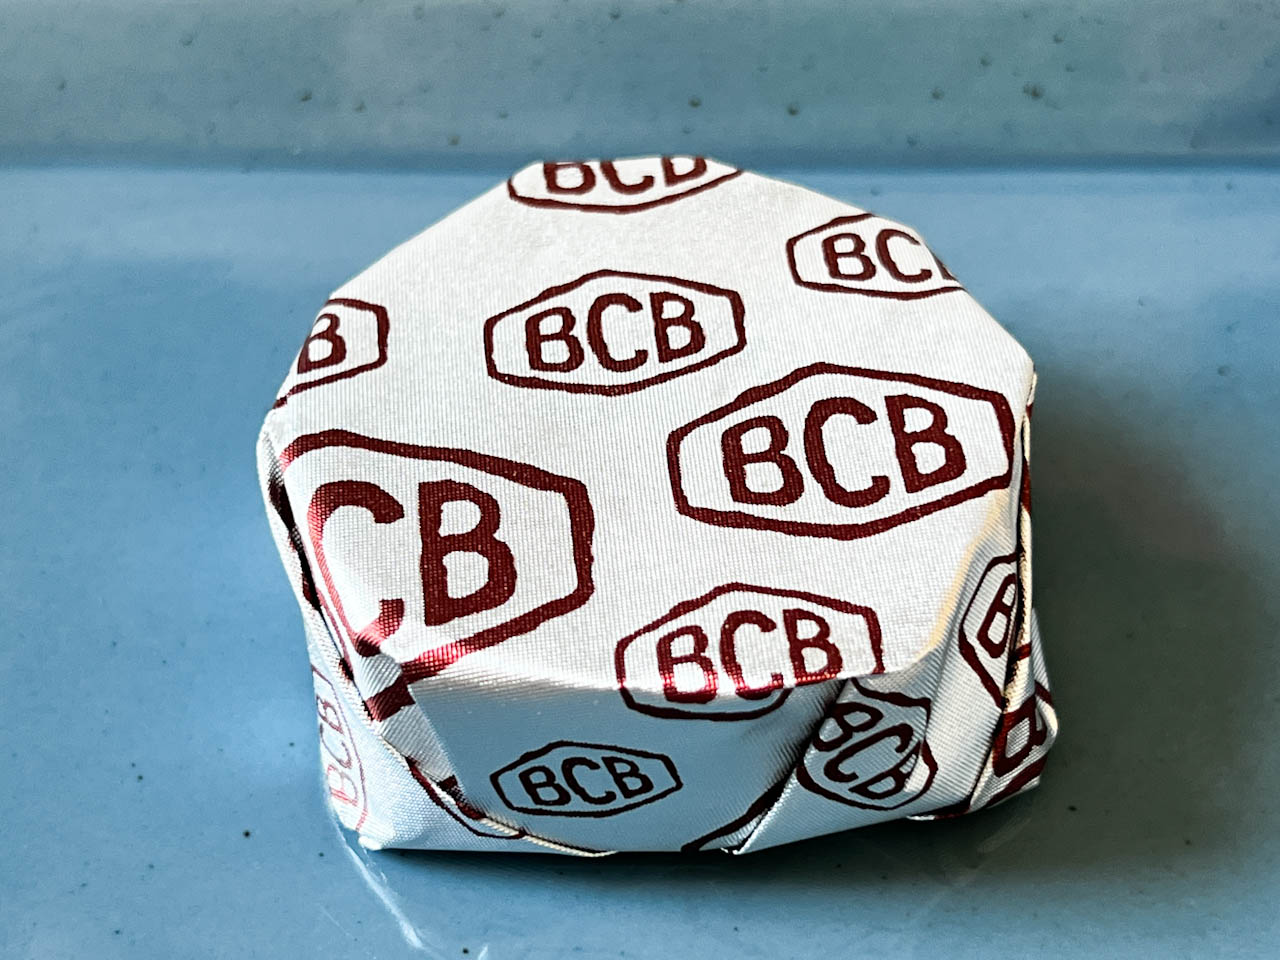 銀紙に茶色でプリントされた「BCB」というロゴが際立ちます